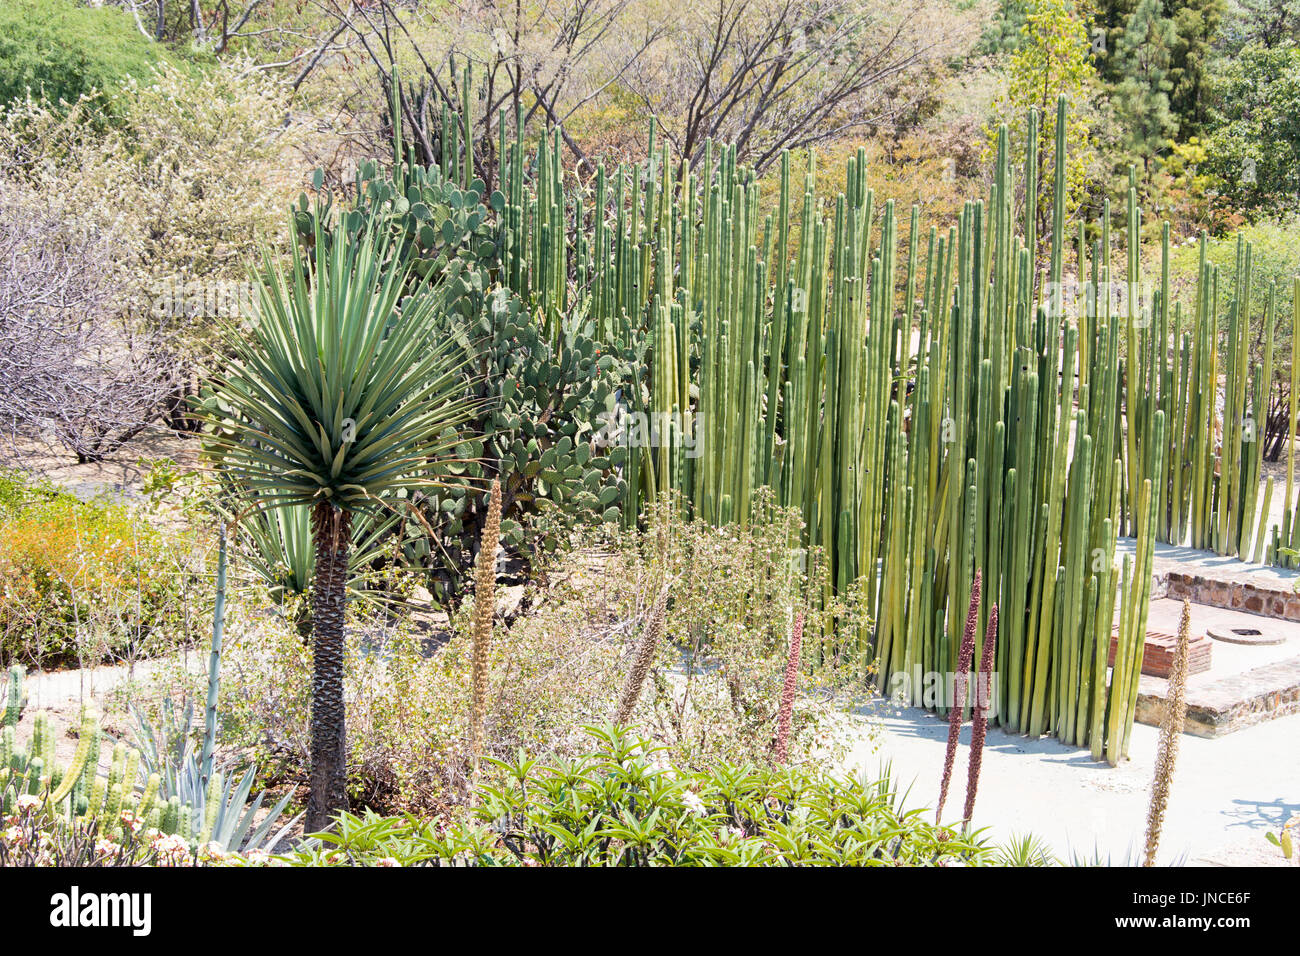 Jardin Etnobotanico de Oaxaca, Botanical Garden, Oaxaca, Mexico Stock Photo